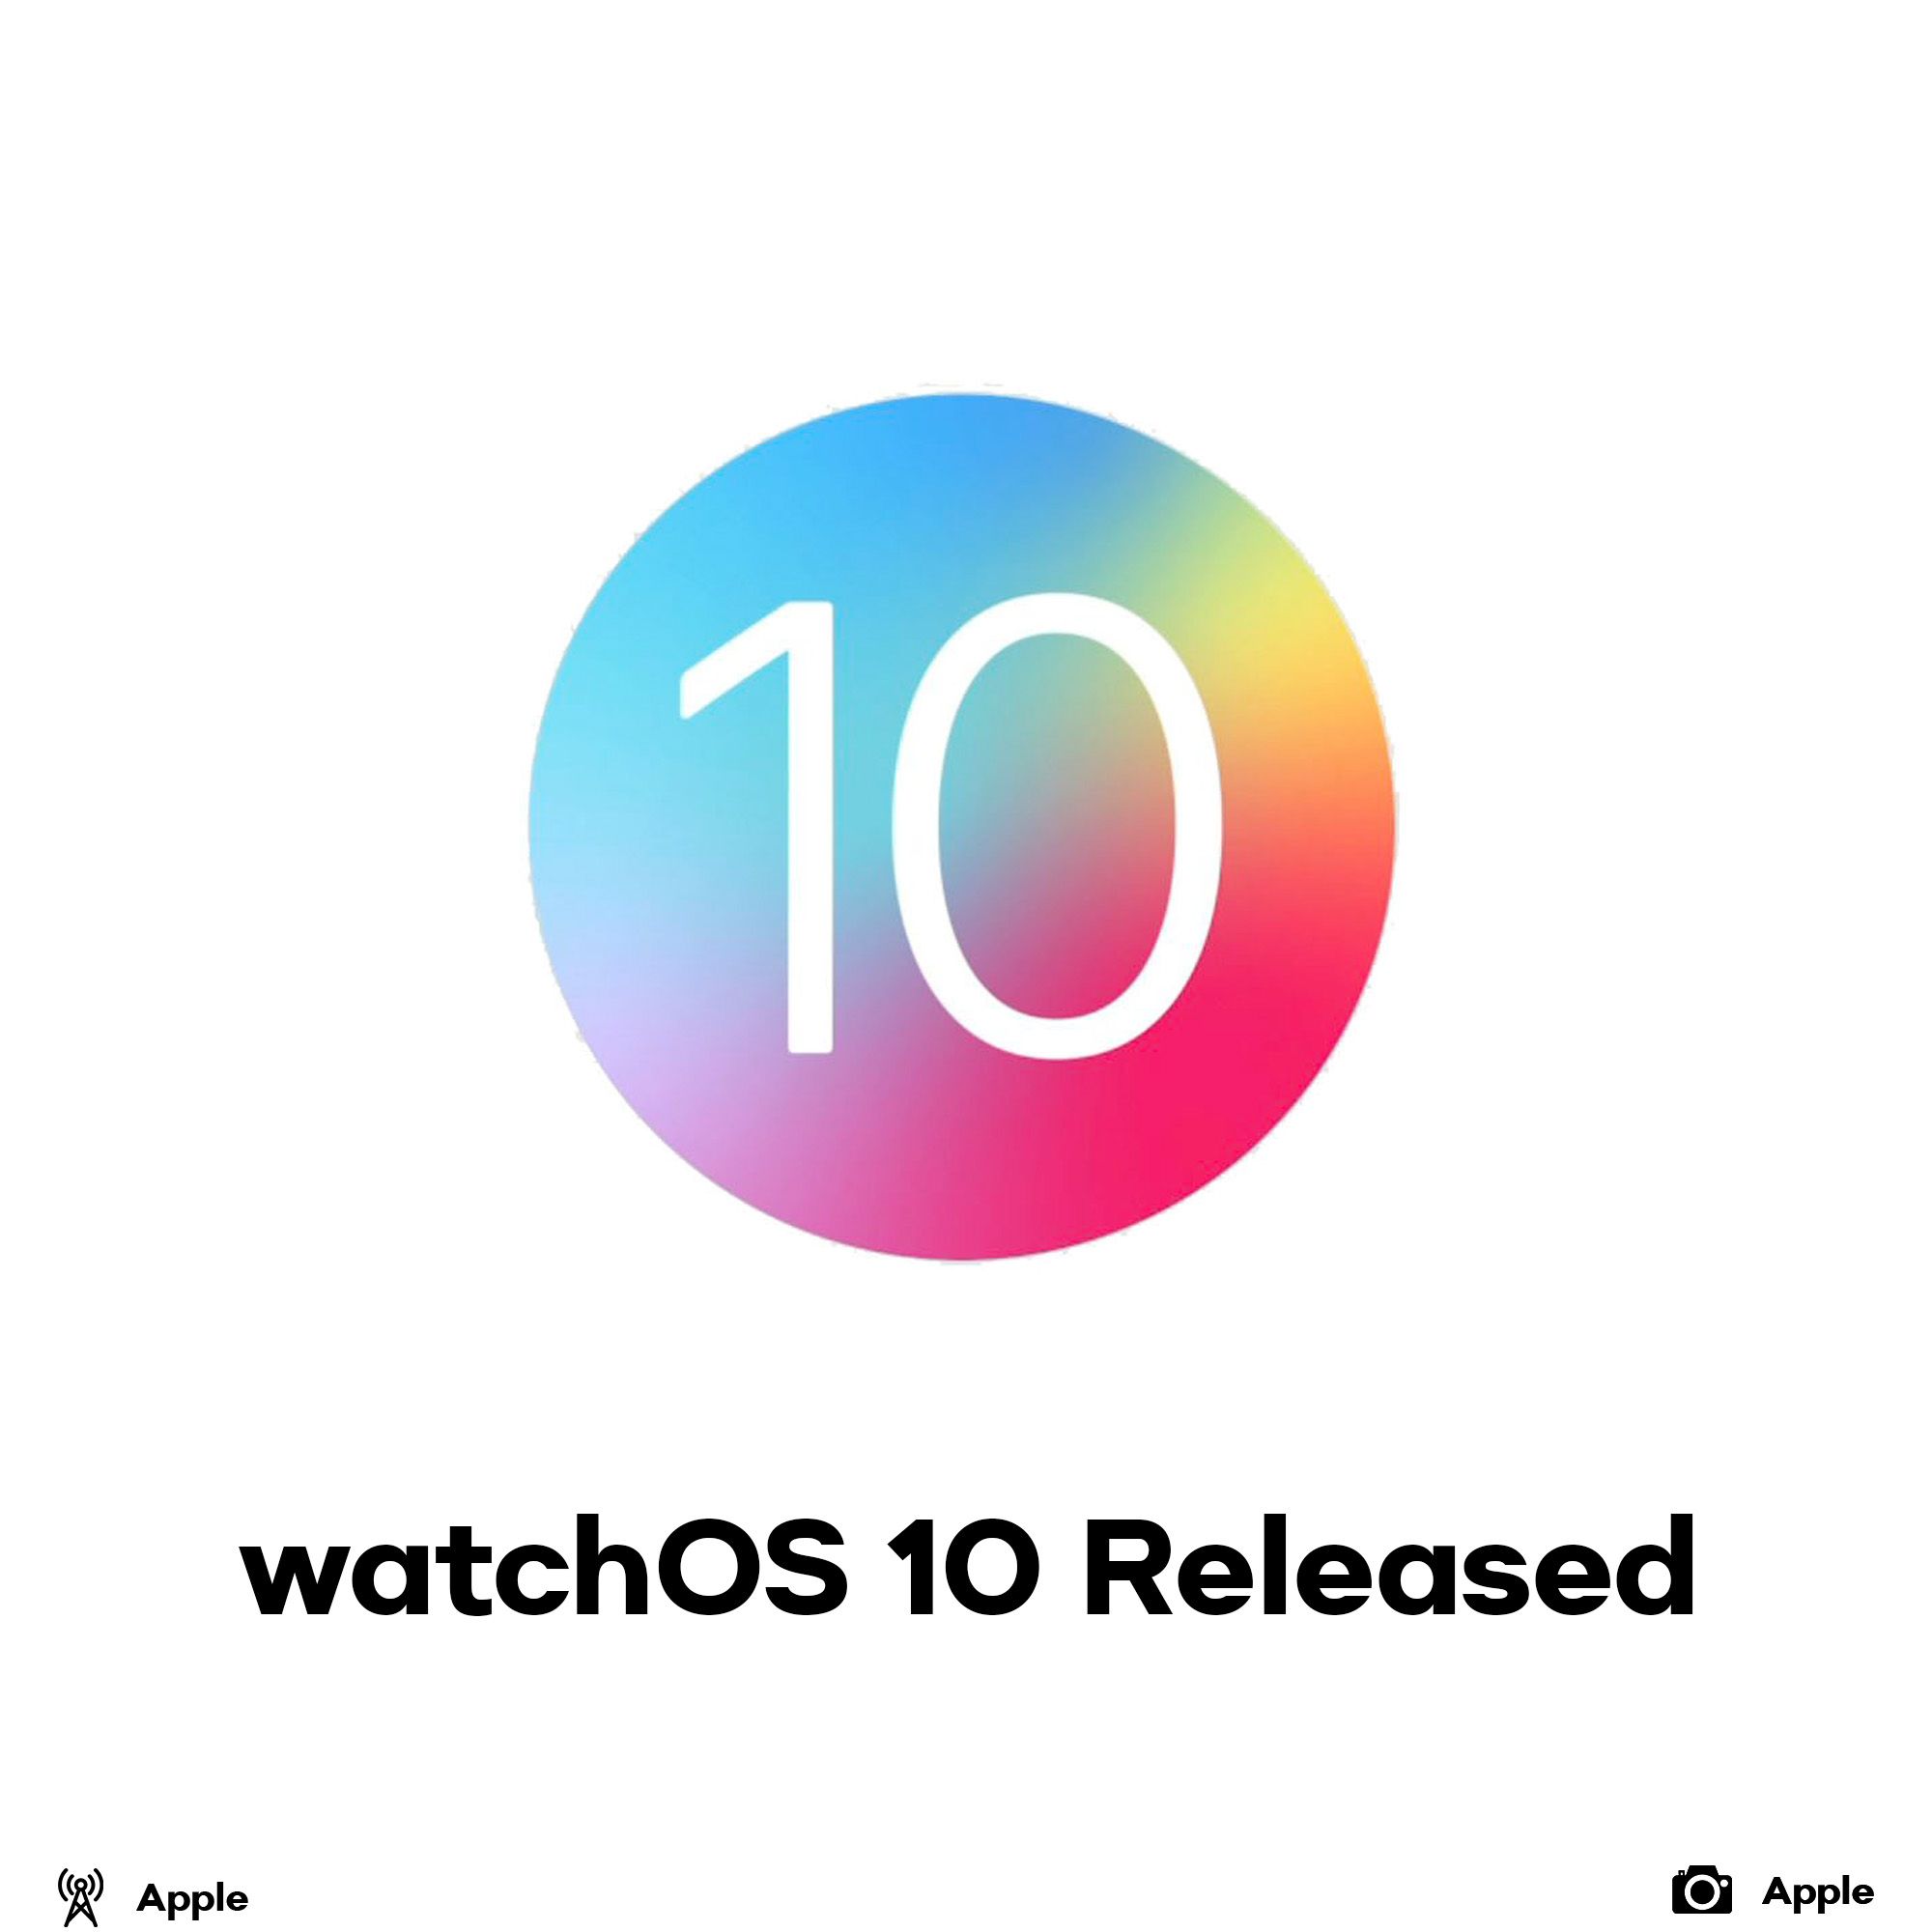 watchOS 10 released